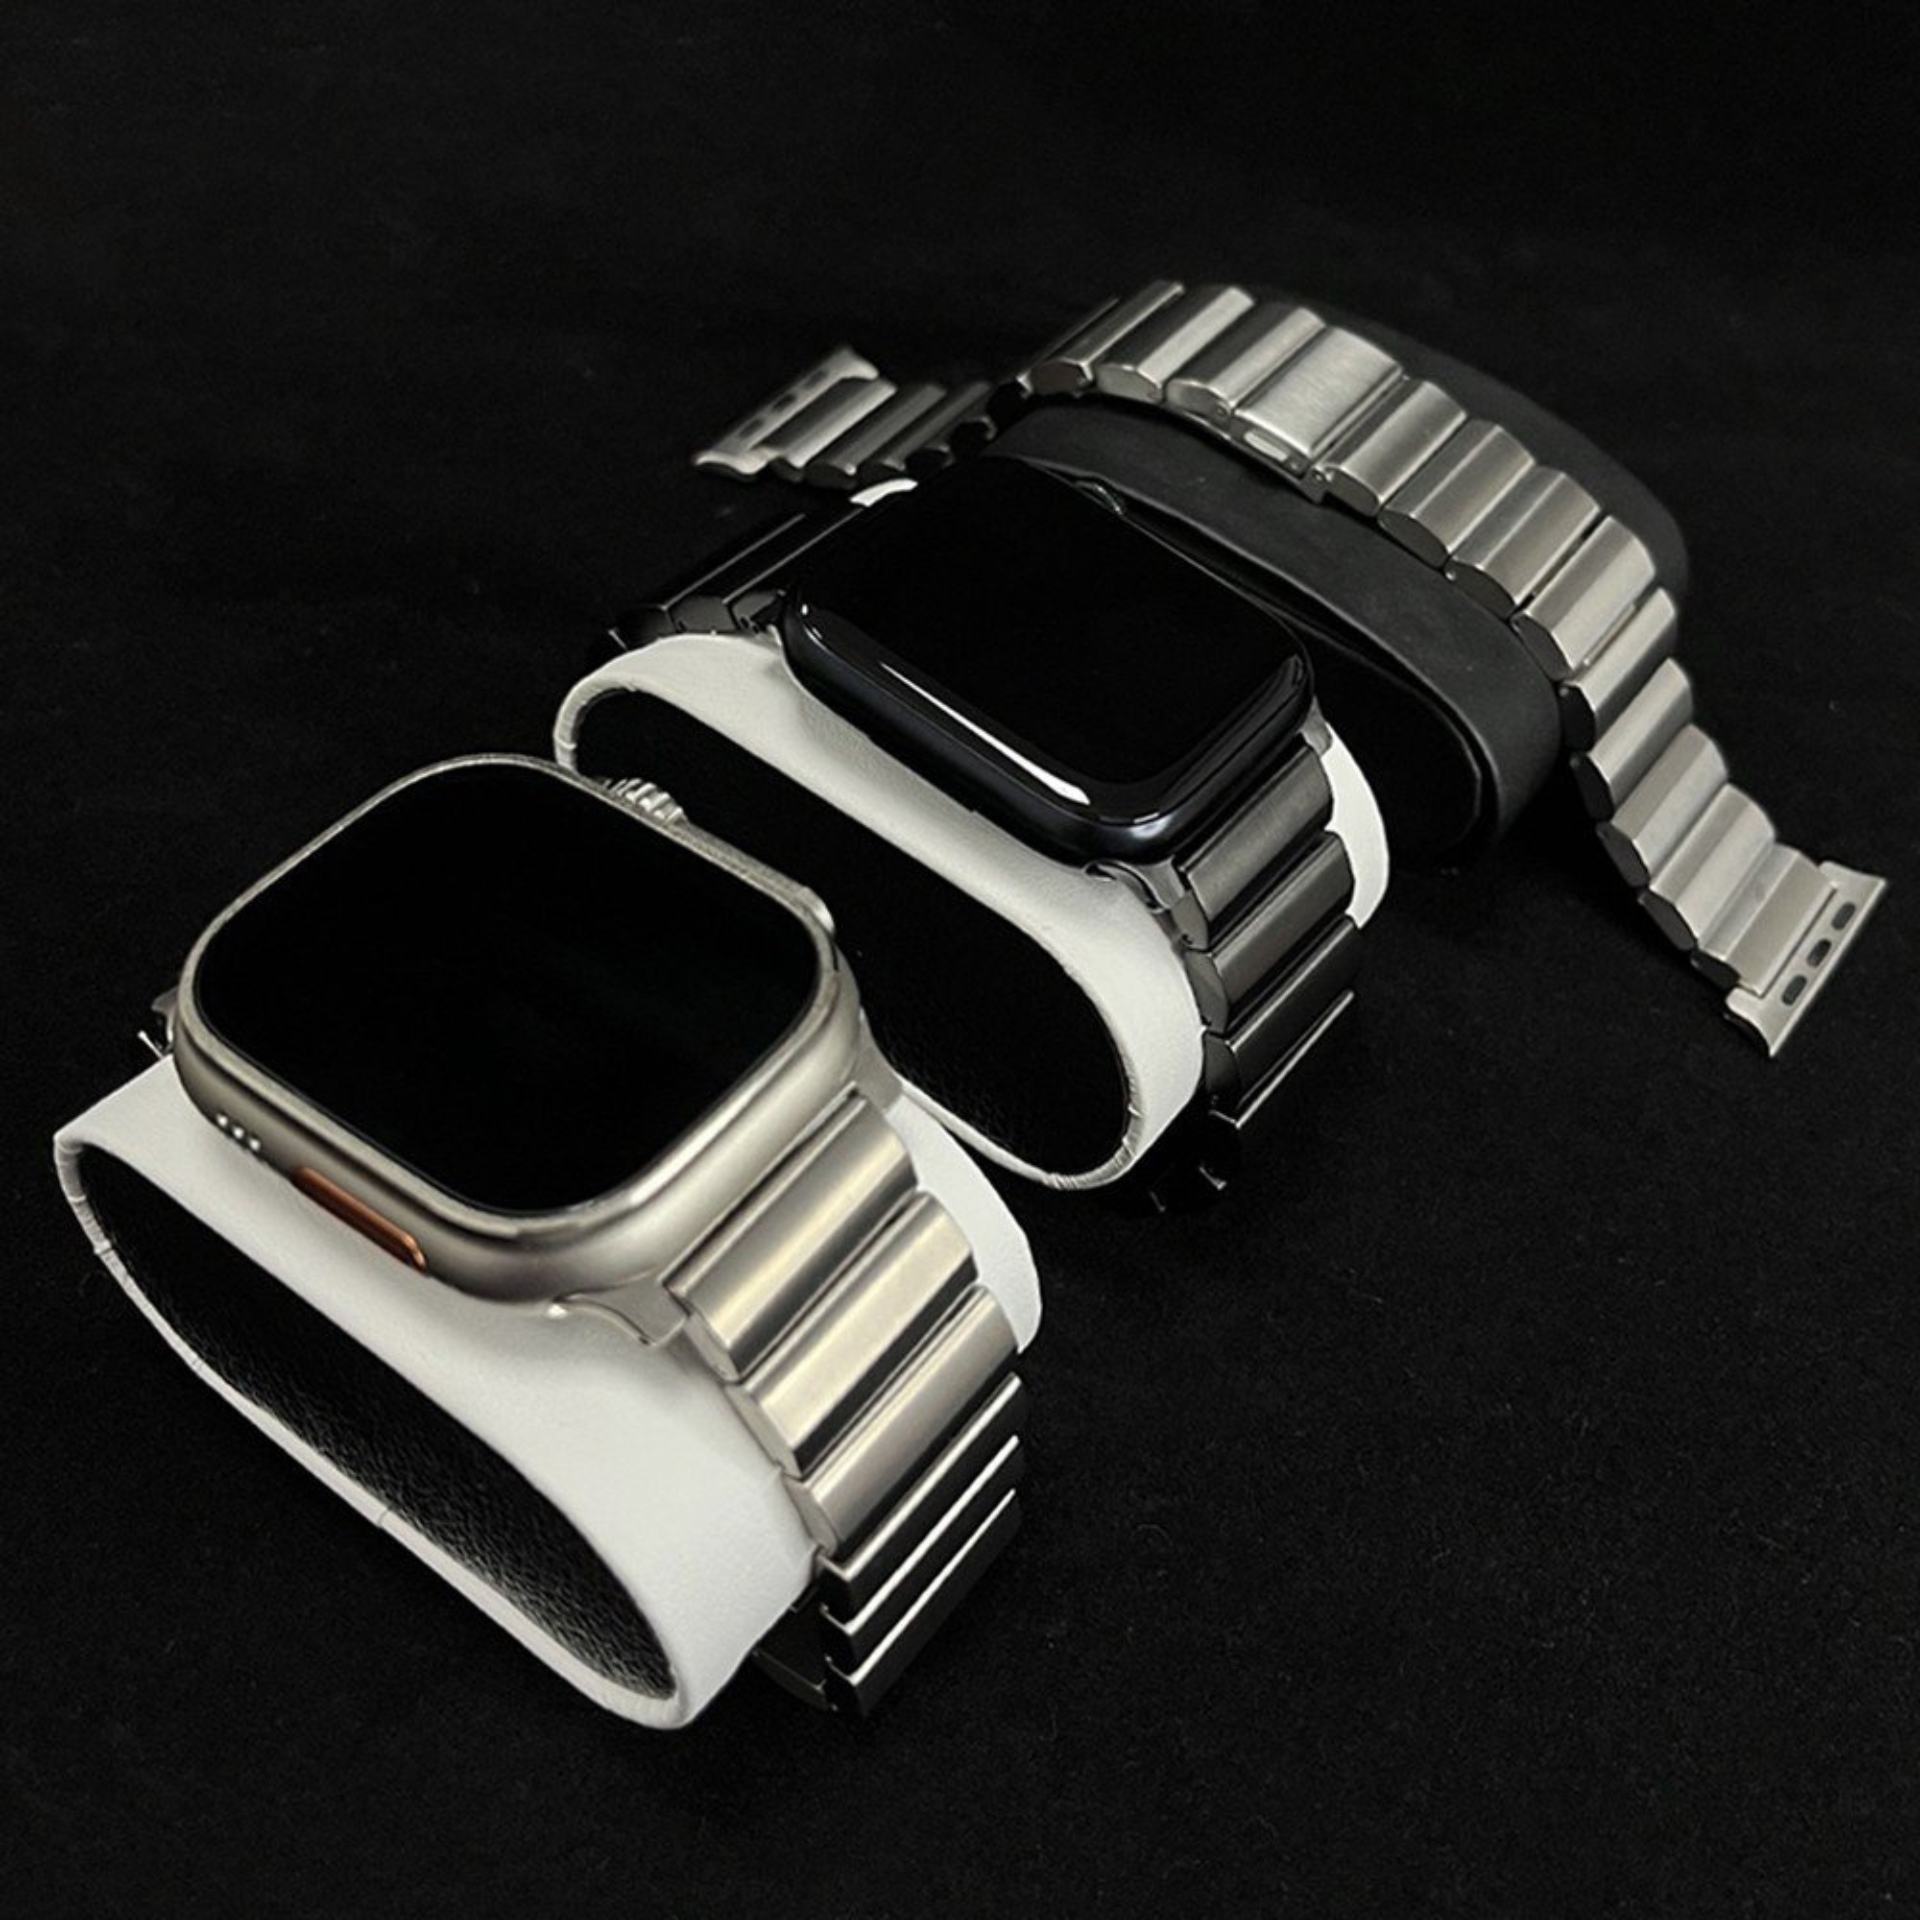 Dây Đeo Thay Thế Titan Dành Cho Apple Watch Ultra / Apple Watch Series 1-8/SE/SE2022, Kai.N Transformer Titanium - Hàng Chính Hãng